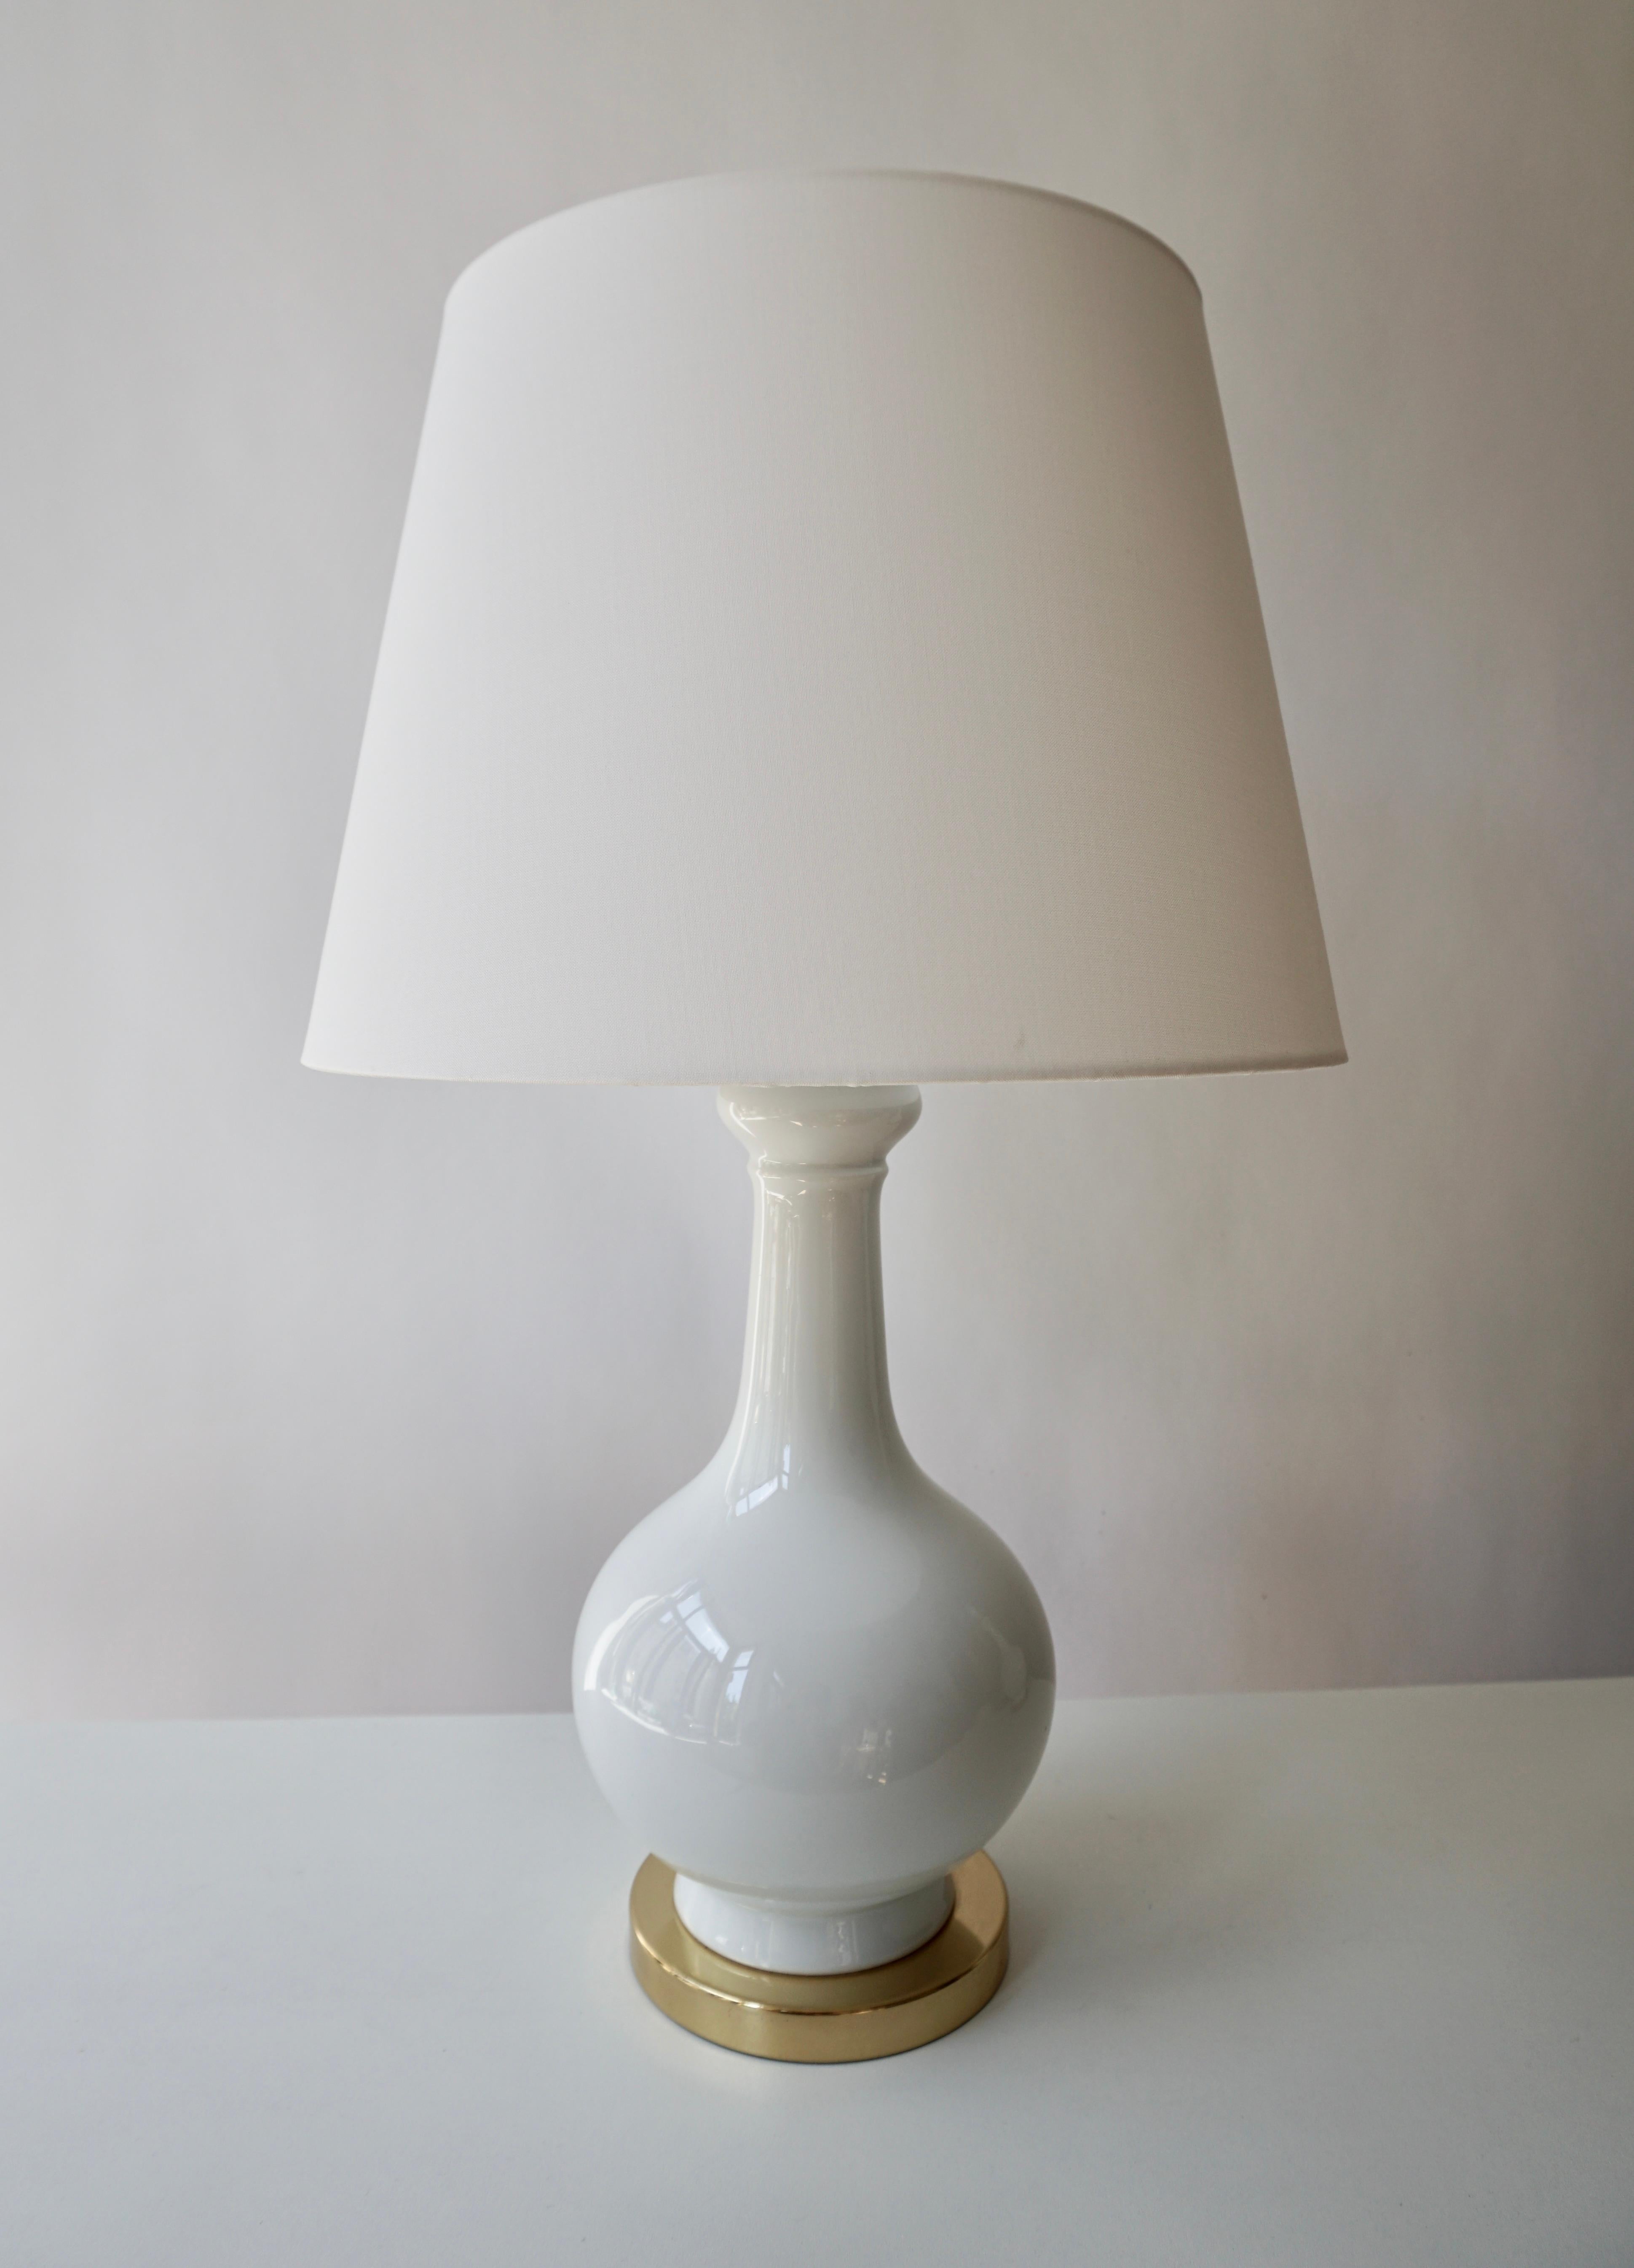 Zwei elegante italienische Tischlampen aus weißem Porzellan aus der Mitte des Jahrhunderts auf einem Messingfuß.
Maße: Durchmesser 16 cm.
Höhe 36 cm.

Die Lampenschirme sind nicht im Preis enthalten.